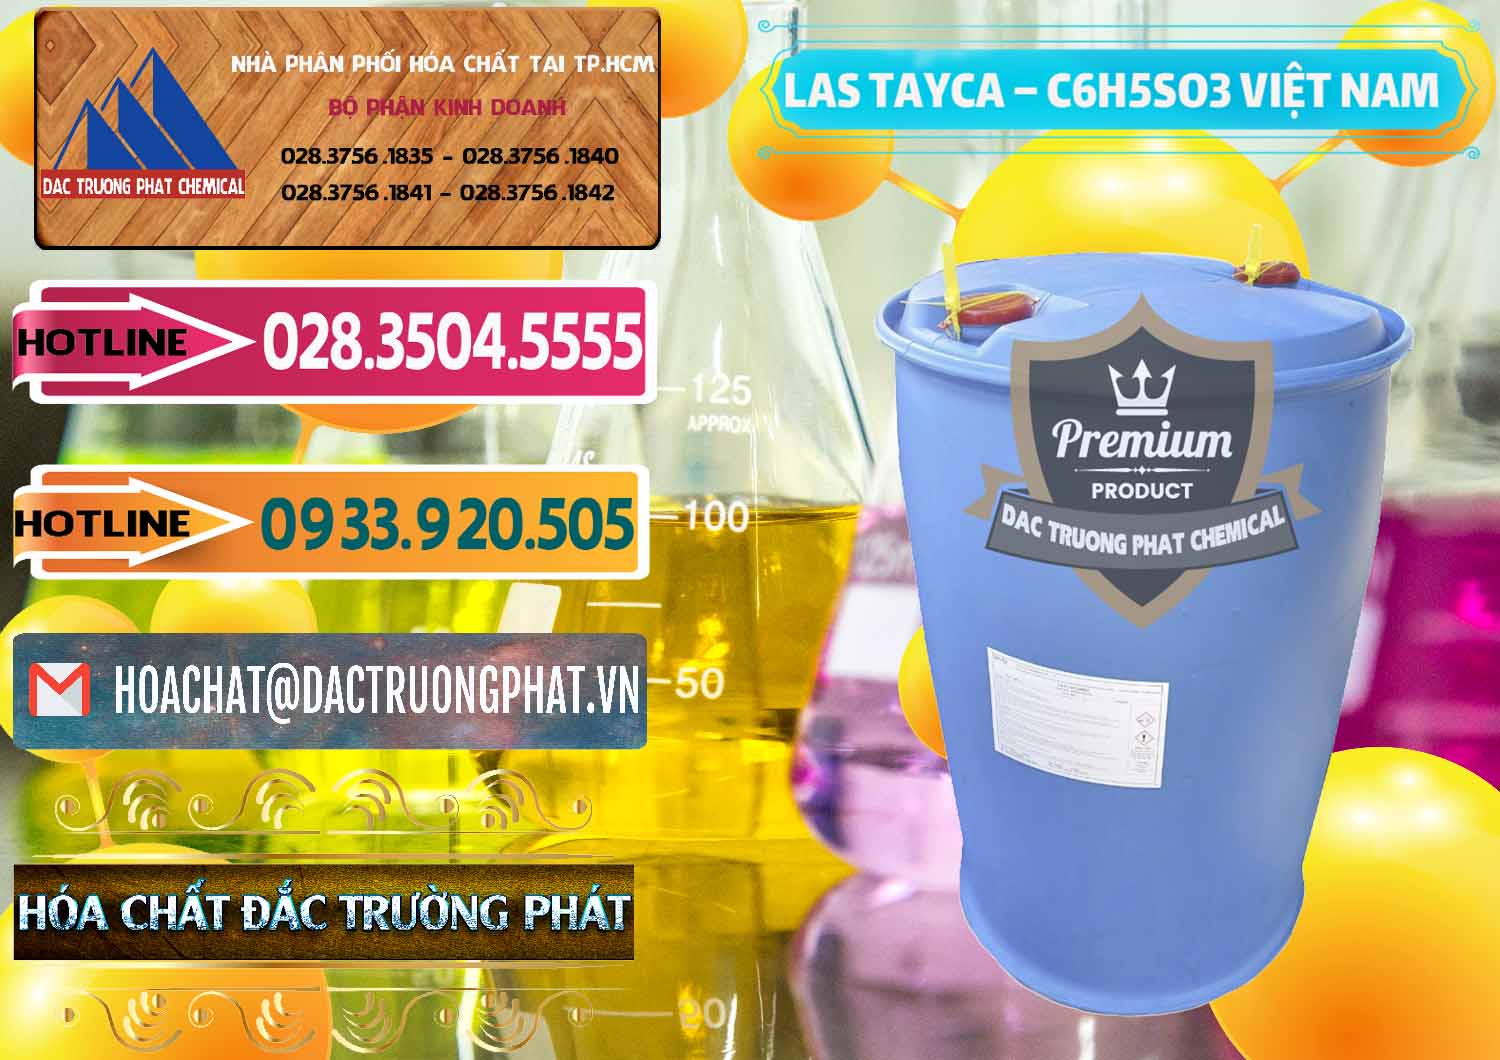 Đơn vị chuyên phân phối ( bán ) Chất tạo bọt Las Tayca Việt Nam - 0305 - Cty chuyên phân phối _ kinh doanh hóa chất tại TP.HCM - dactruongphat.vn